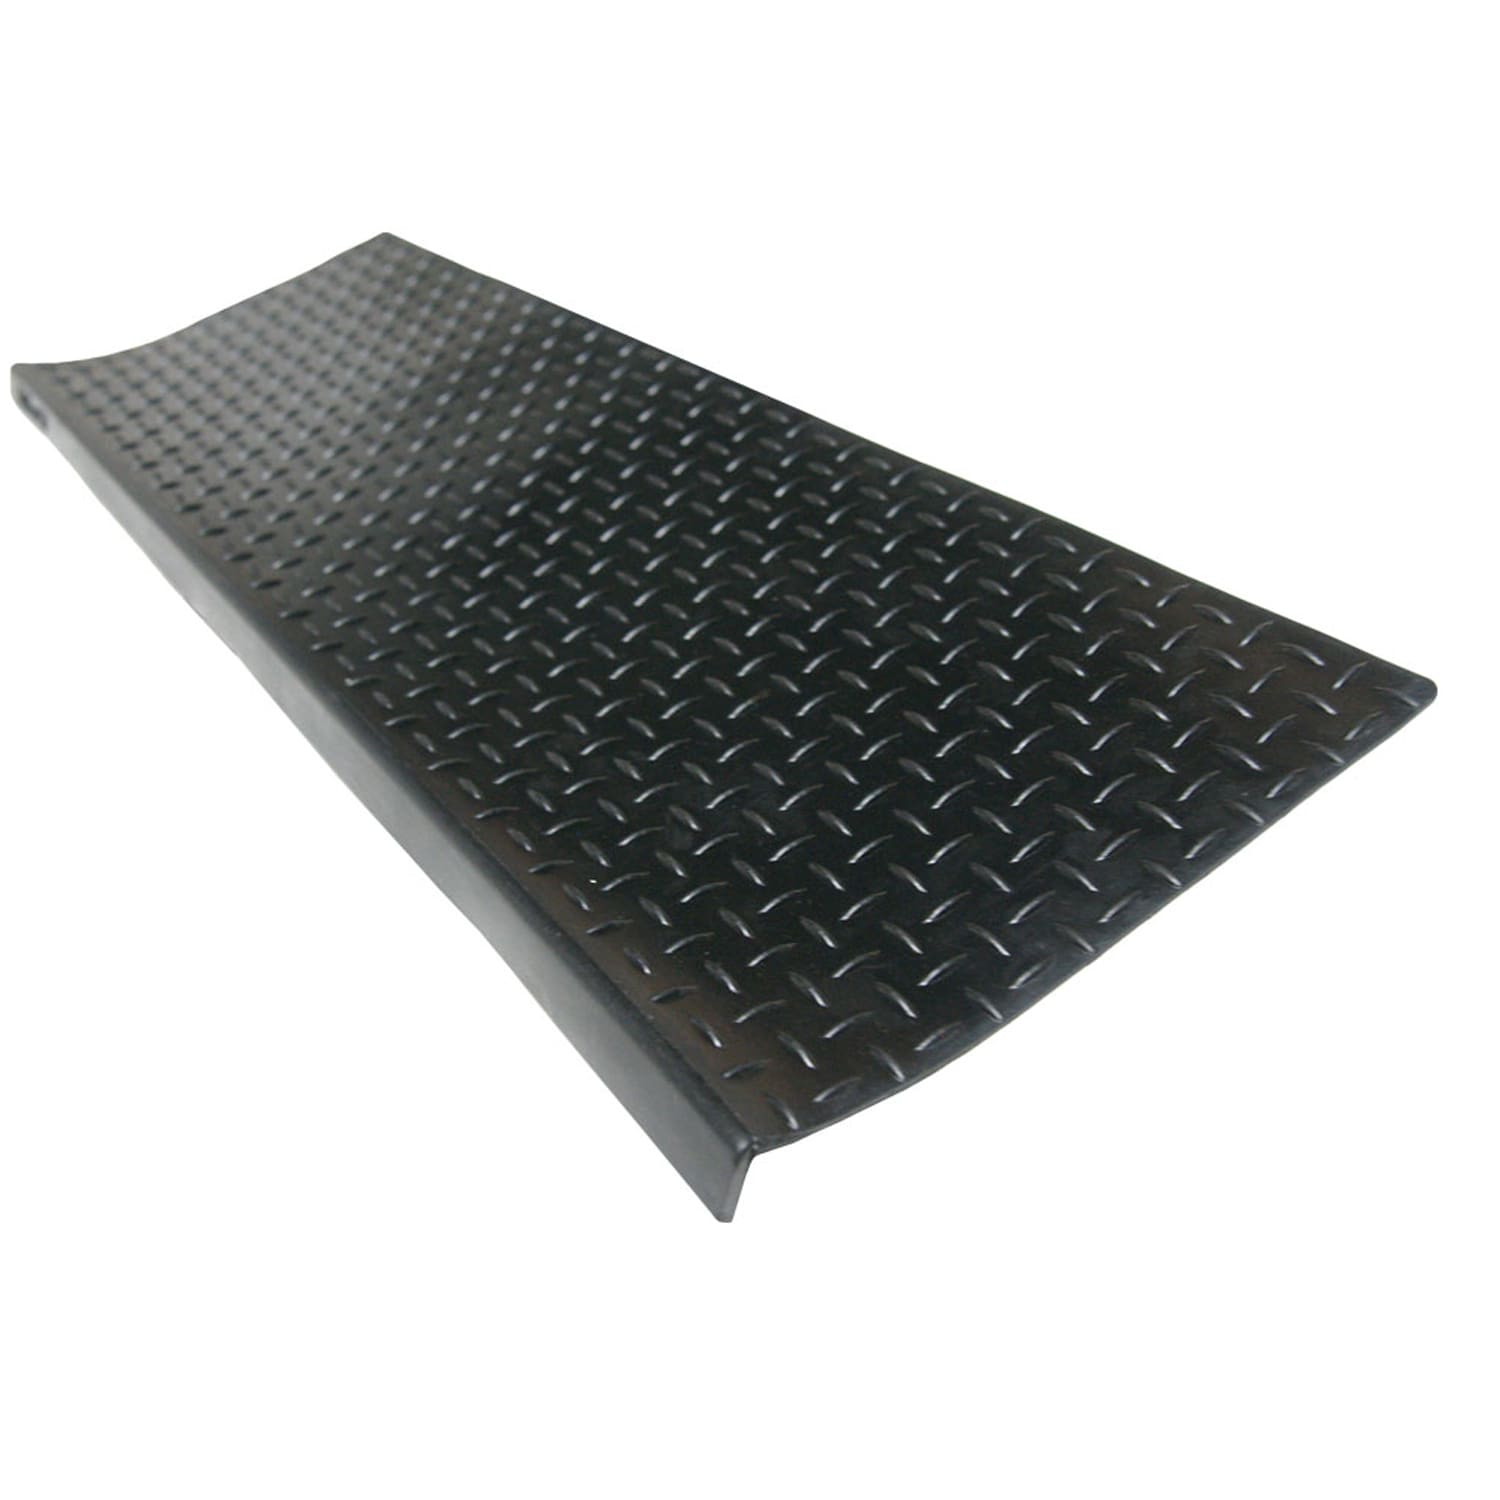 Rubber-Cal Rubber Flooring Rolls - 6mm x 4ft Wide x 3ft Long Roll - Black  Rubber Mat